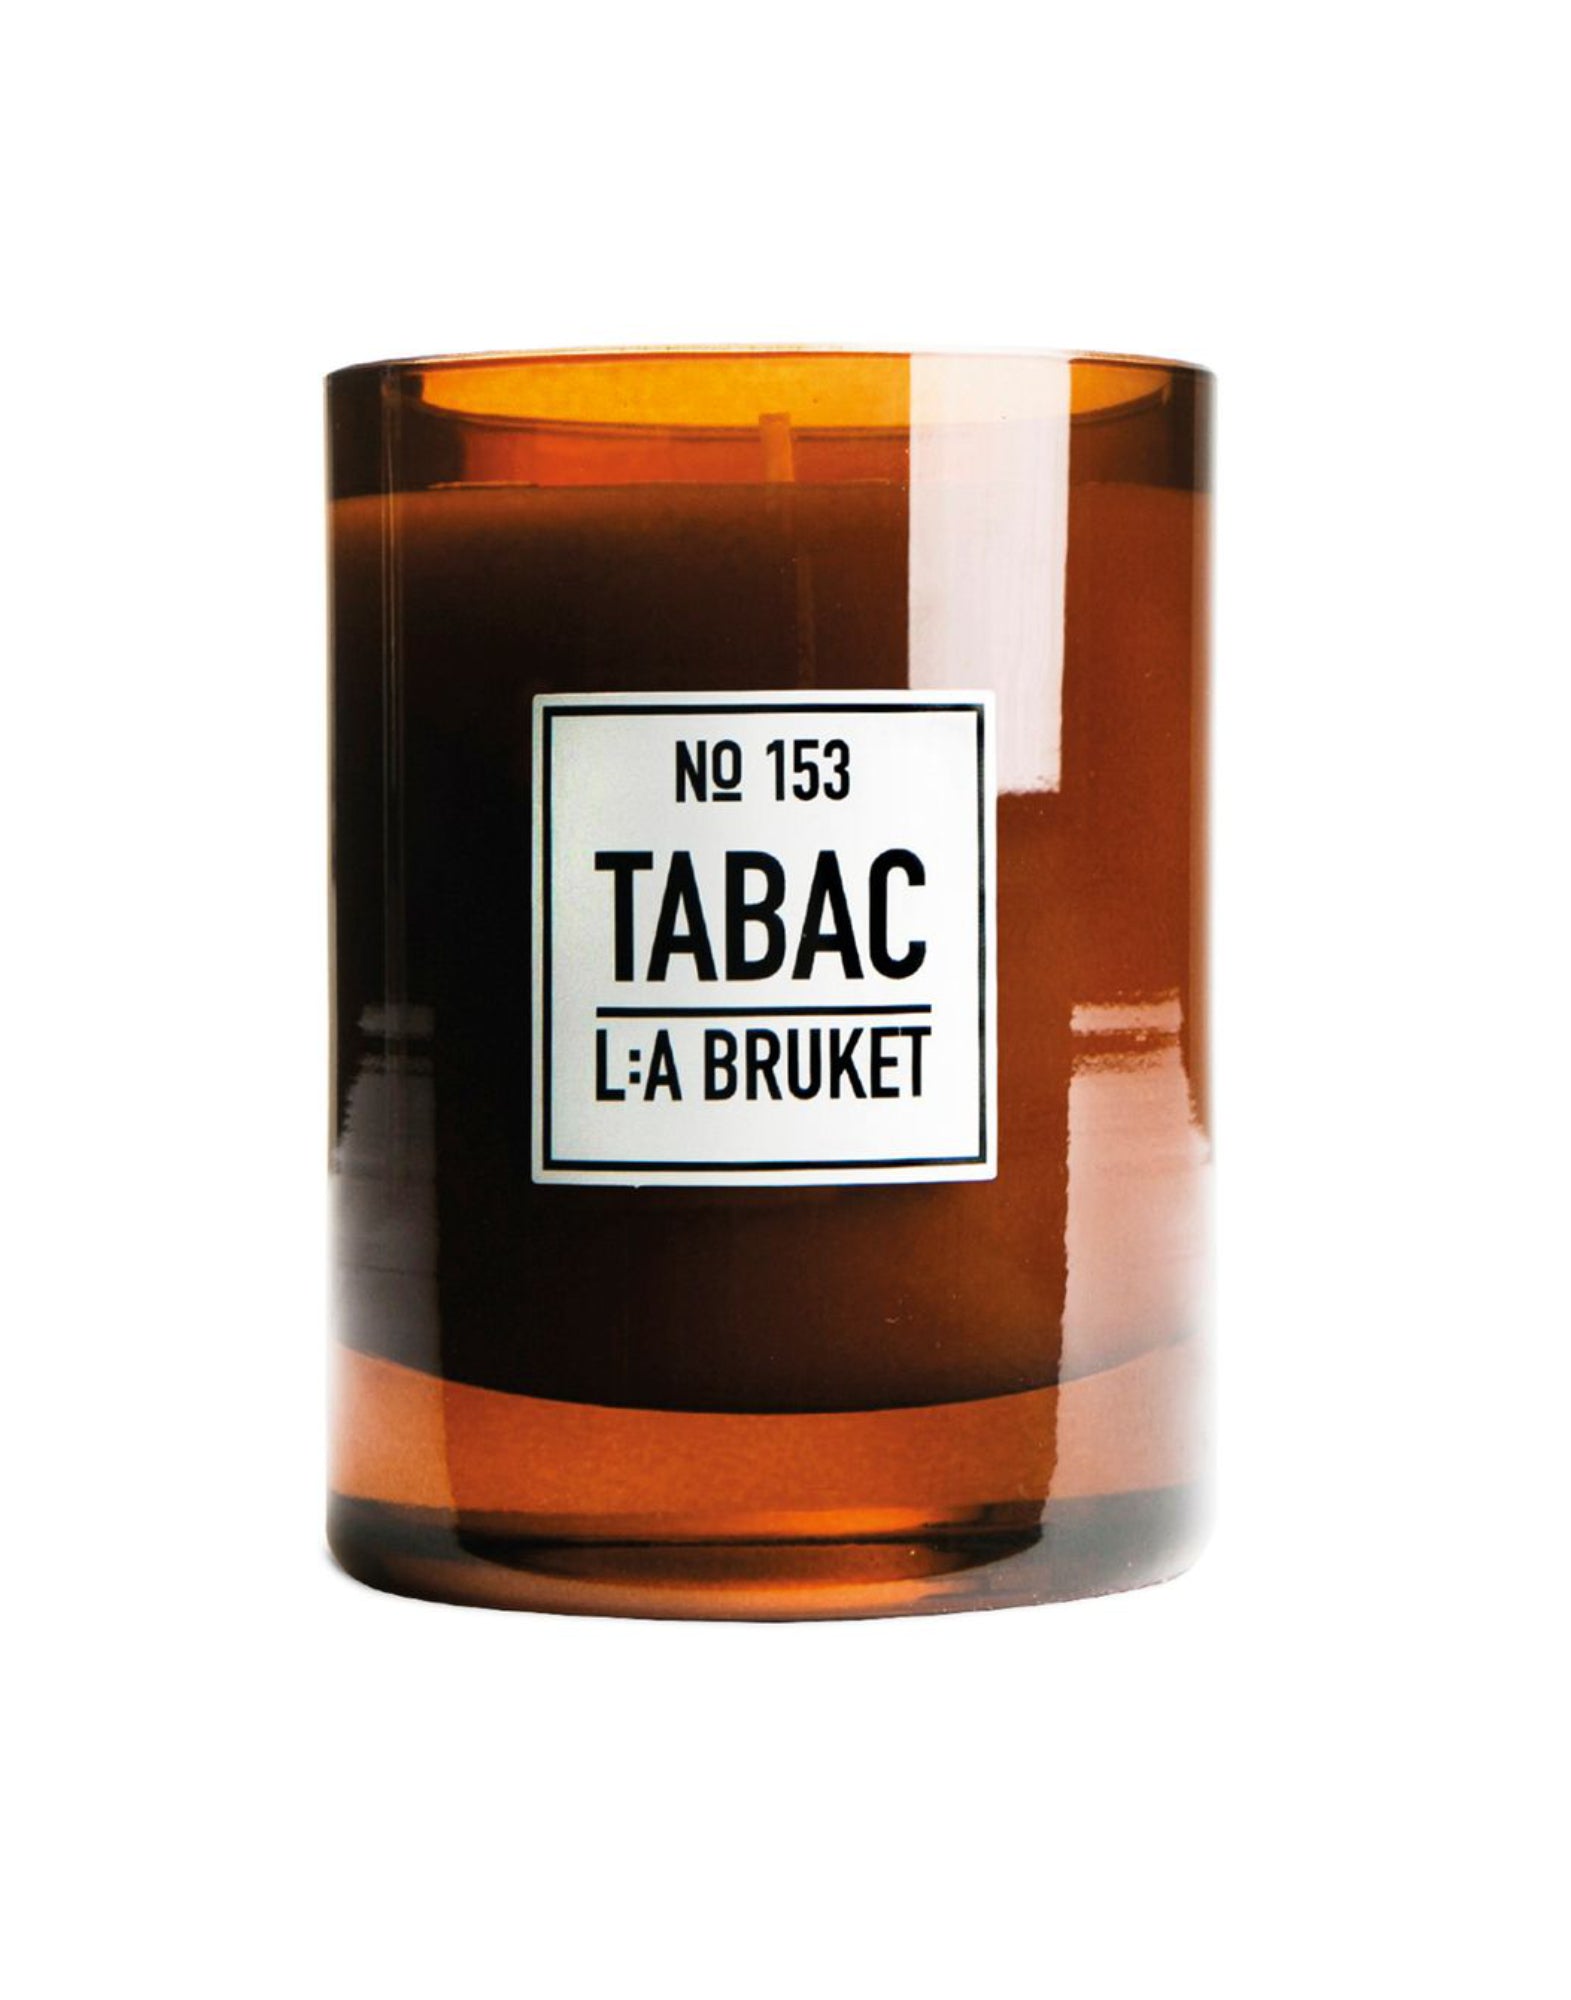 Bougie 153 L:A BRUKET Tabac